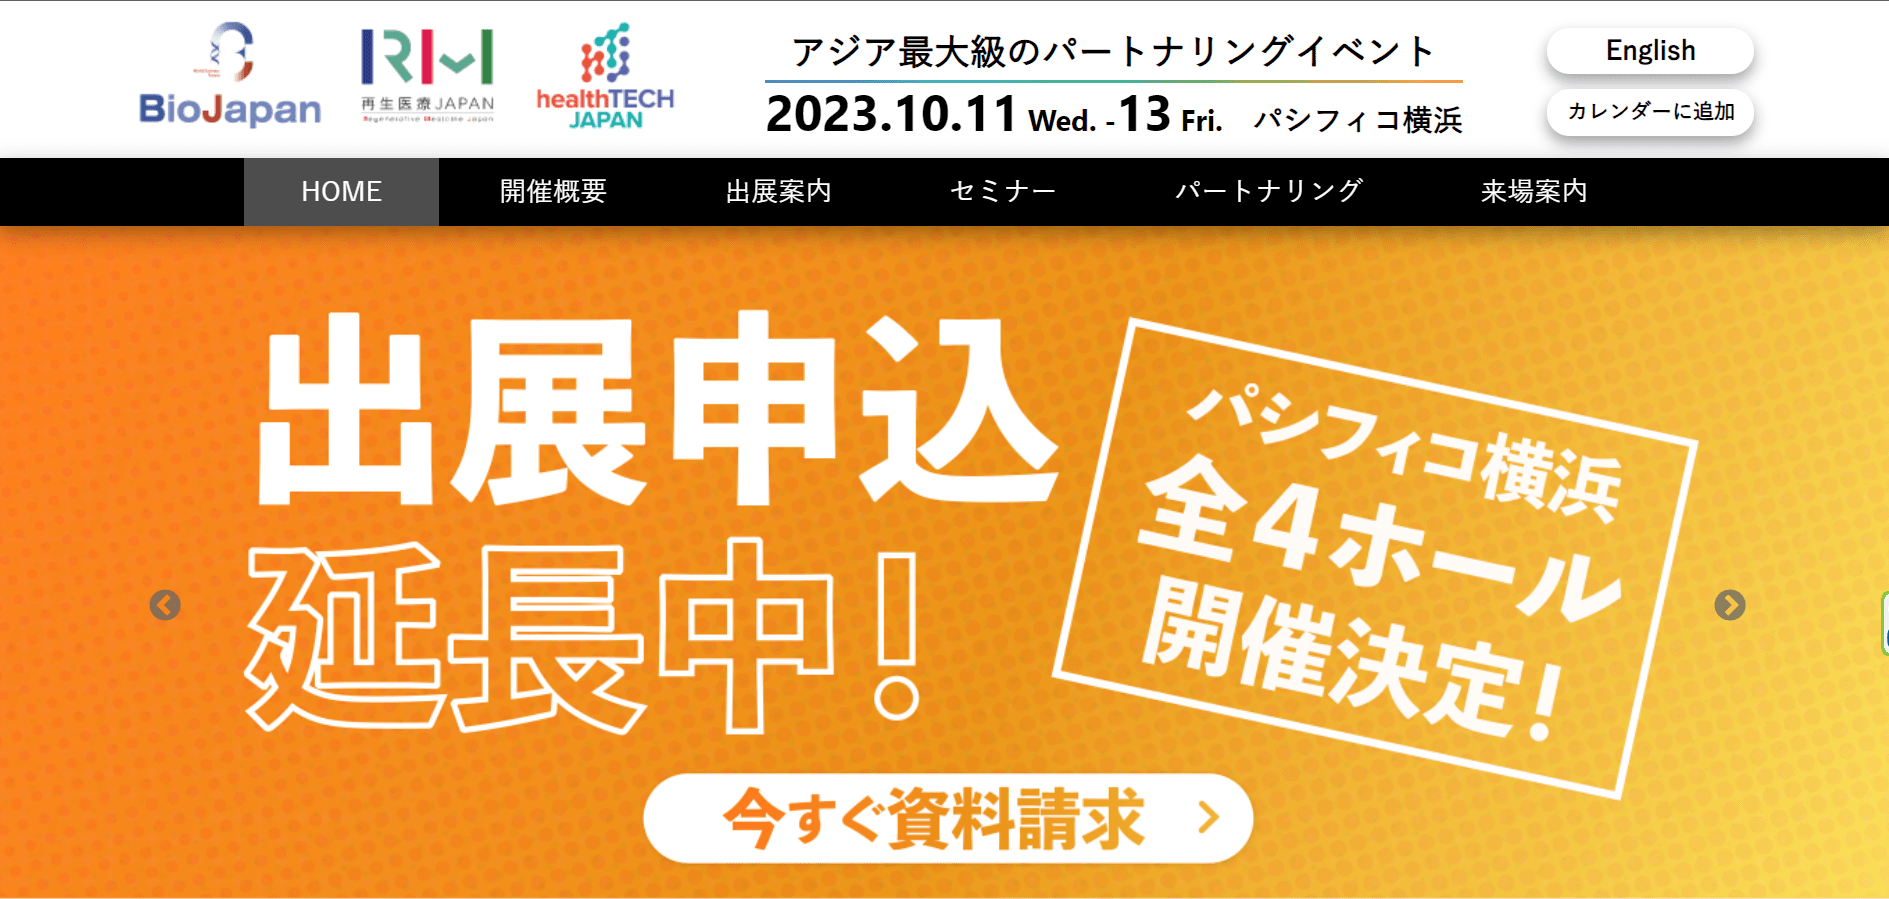 アジア最大級のライフサイエンスイベントBioJapan2023への参加企業を支援します